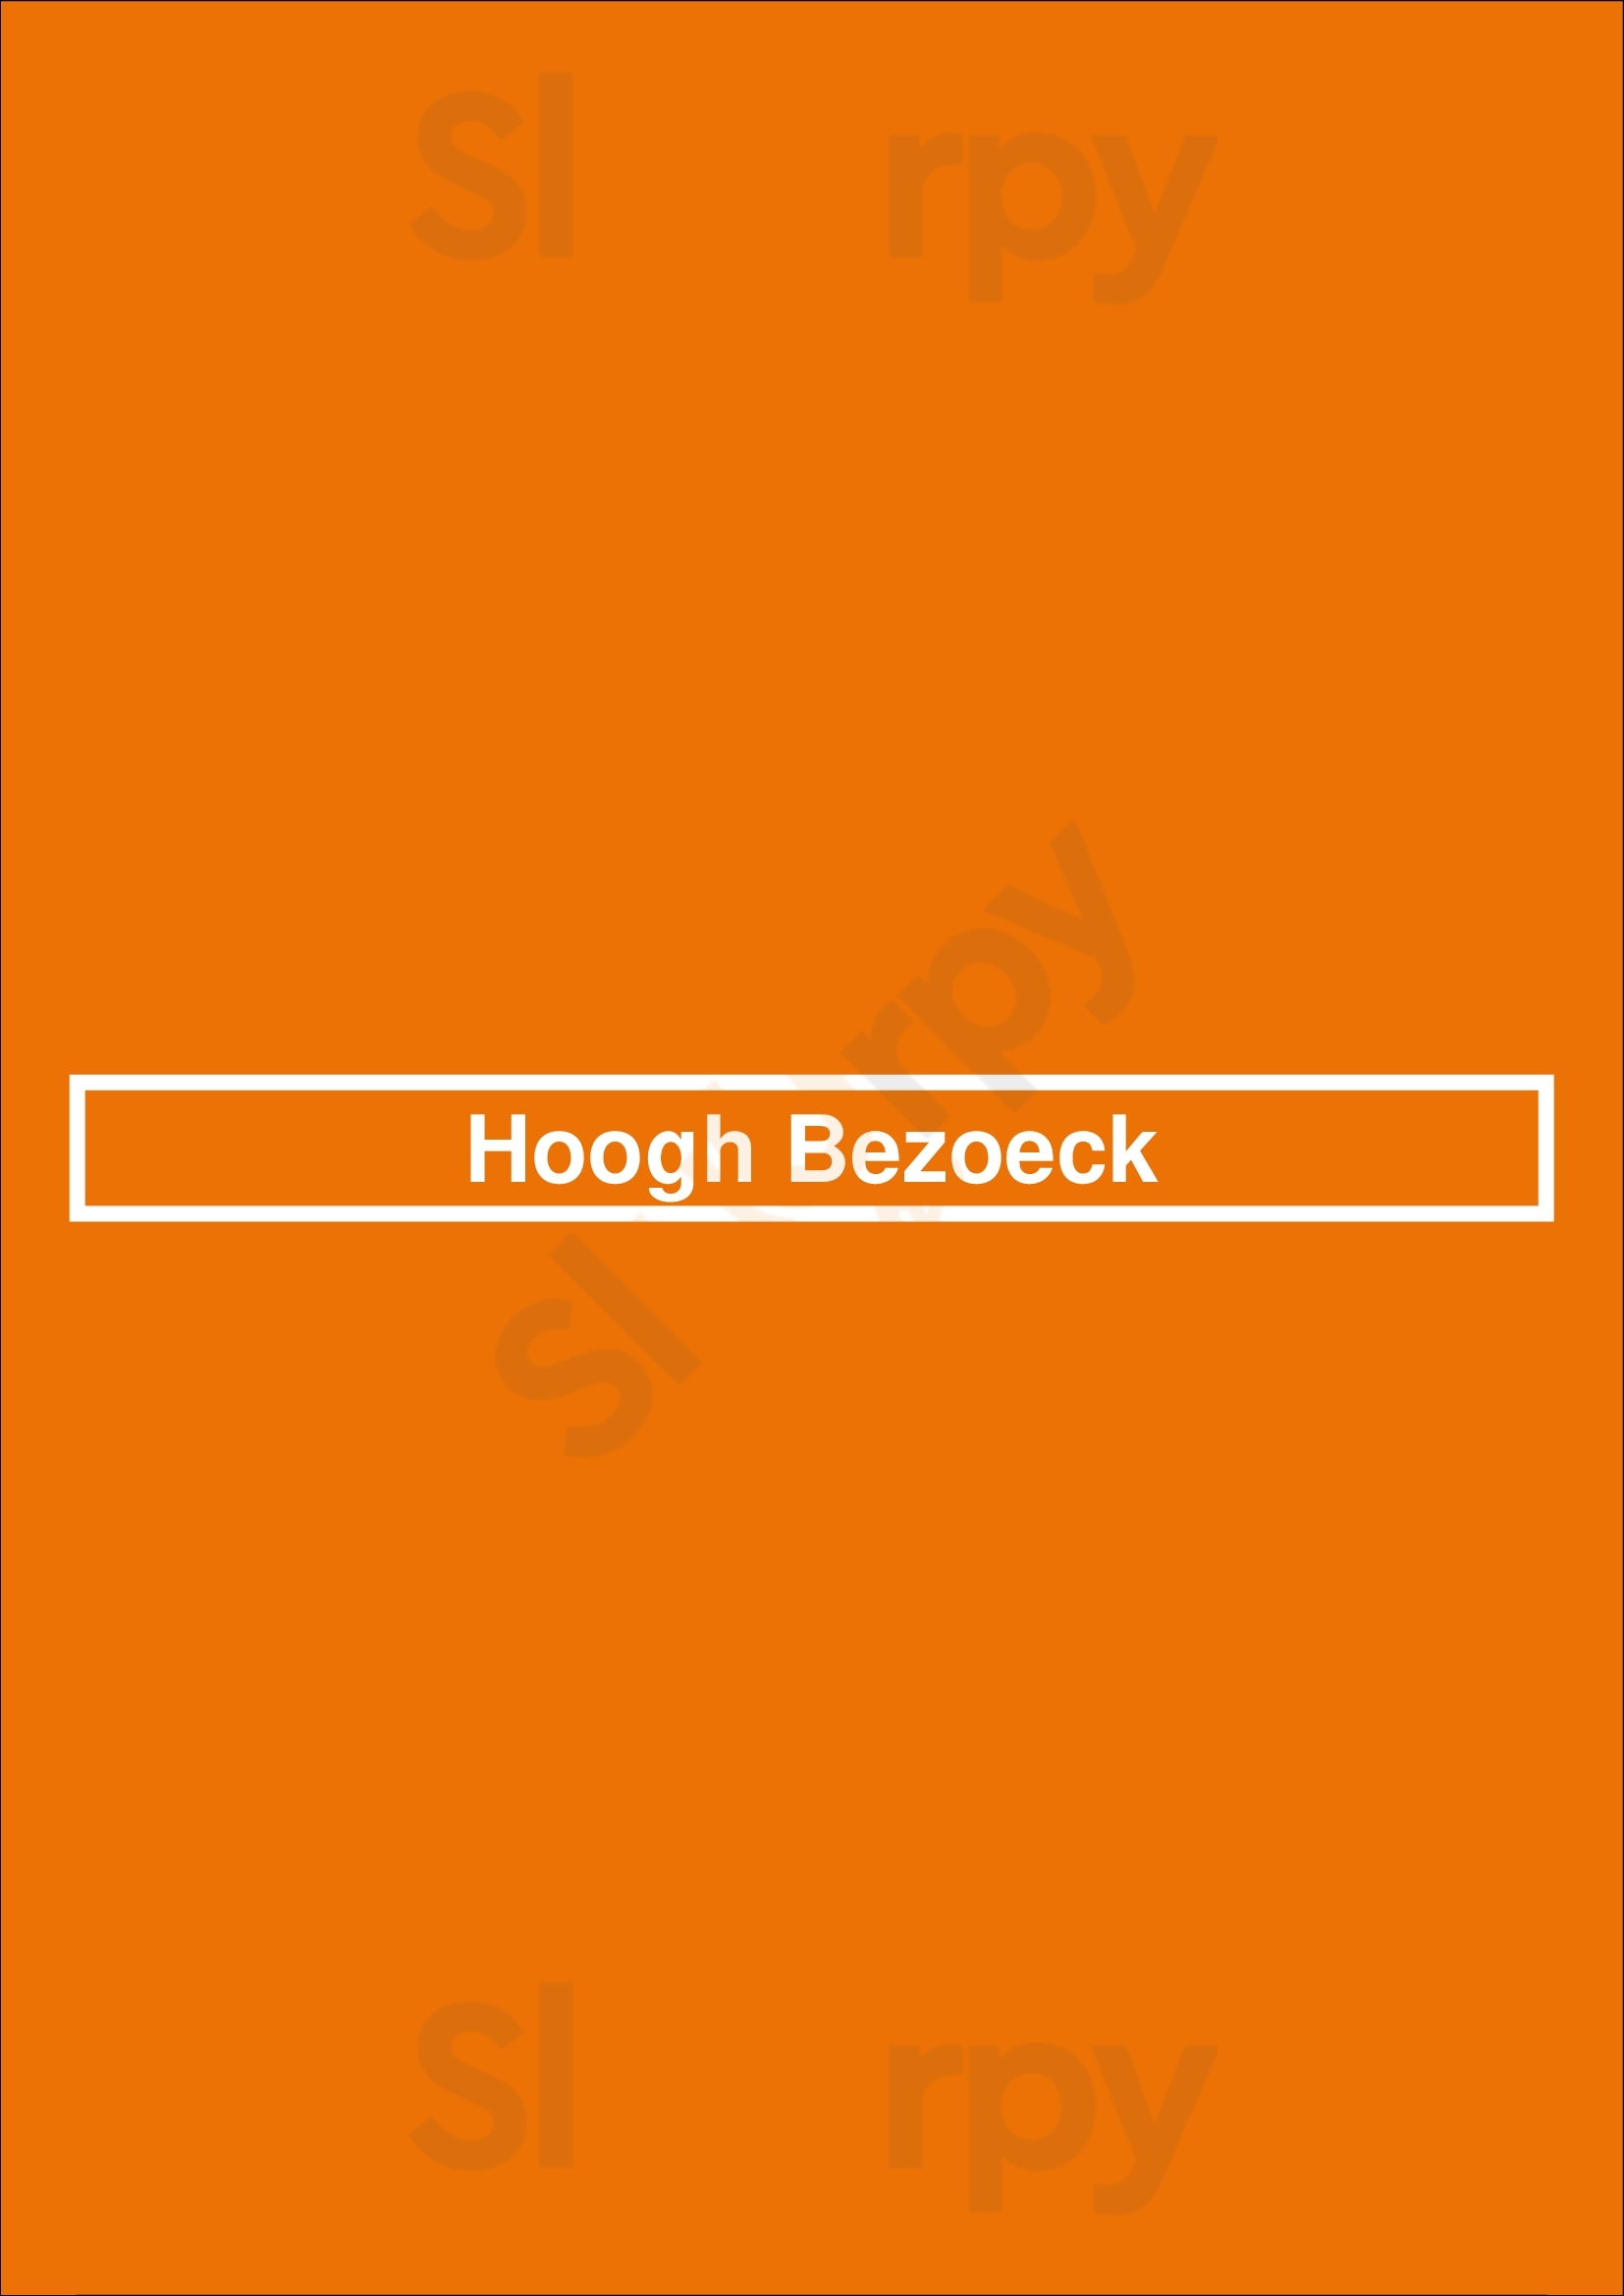 Hoogh Bezoeck Veghel Menu - 1